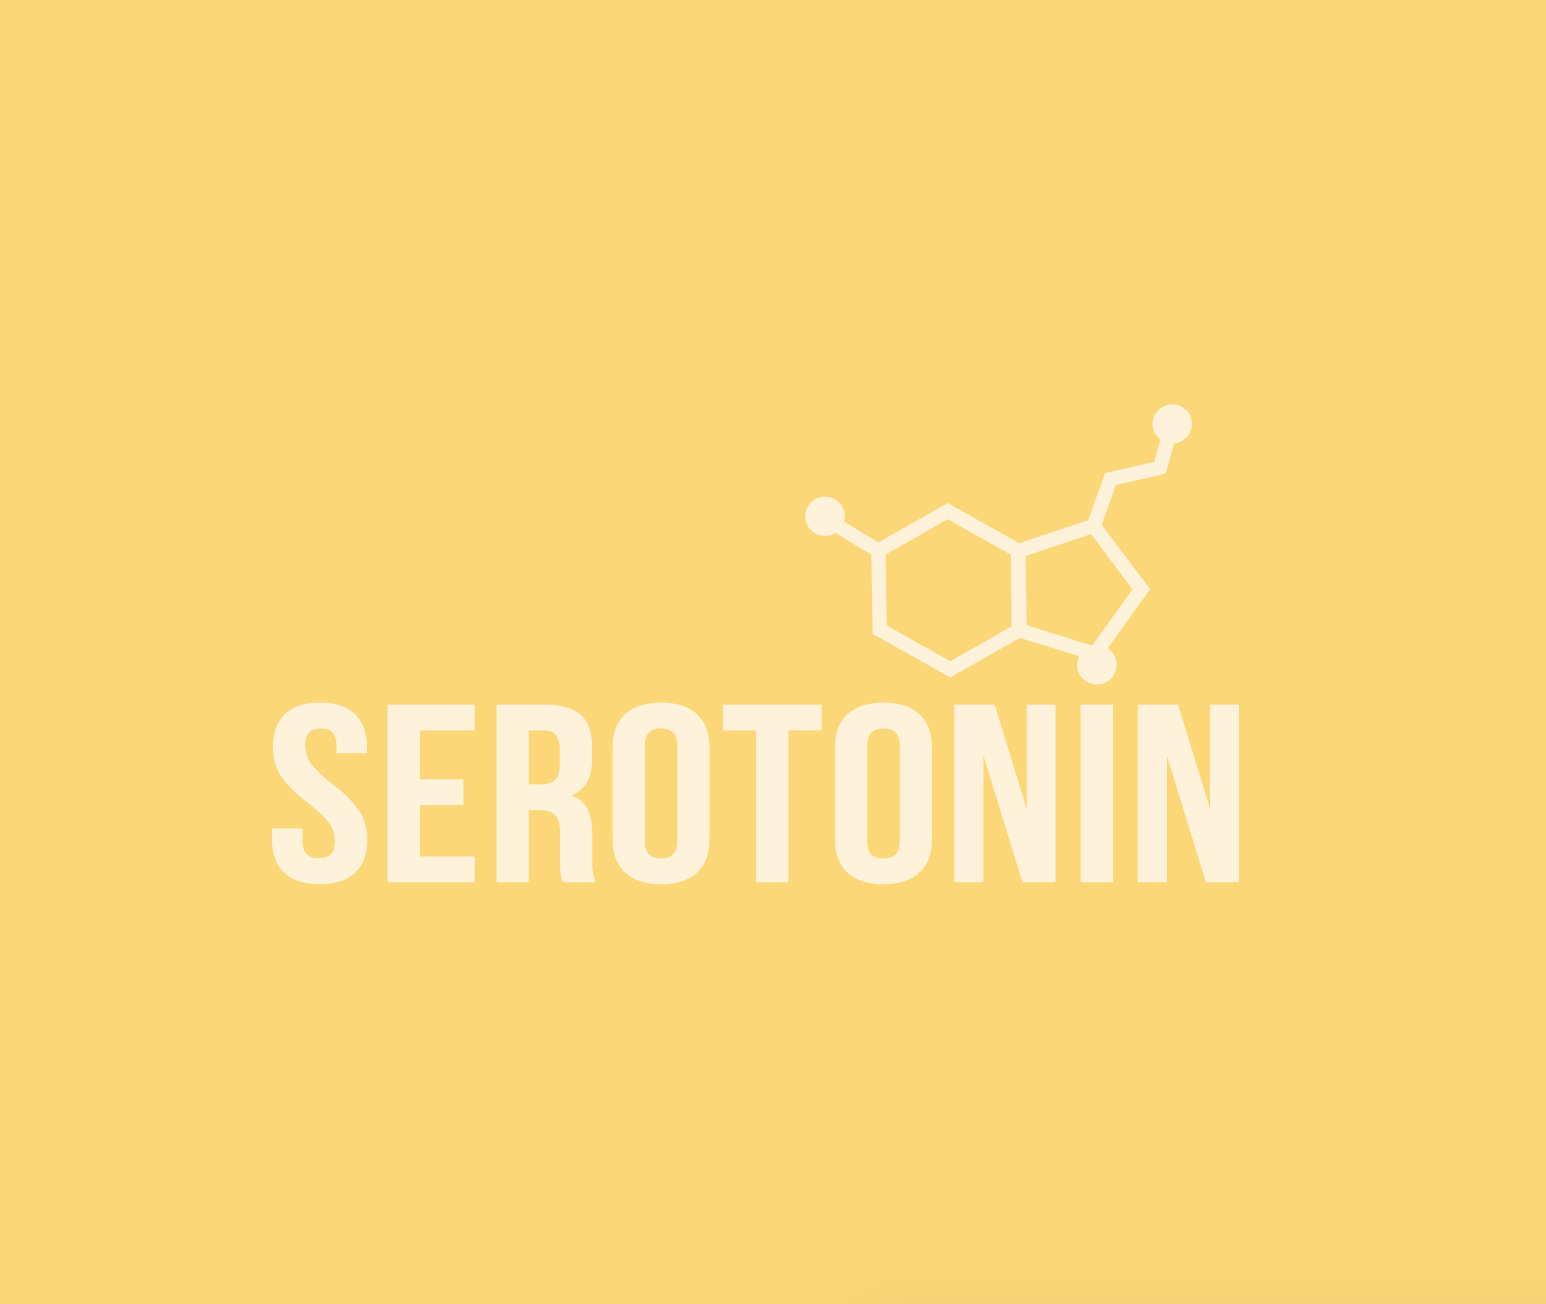 Serotonin Eatery